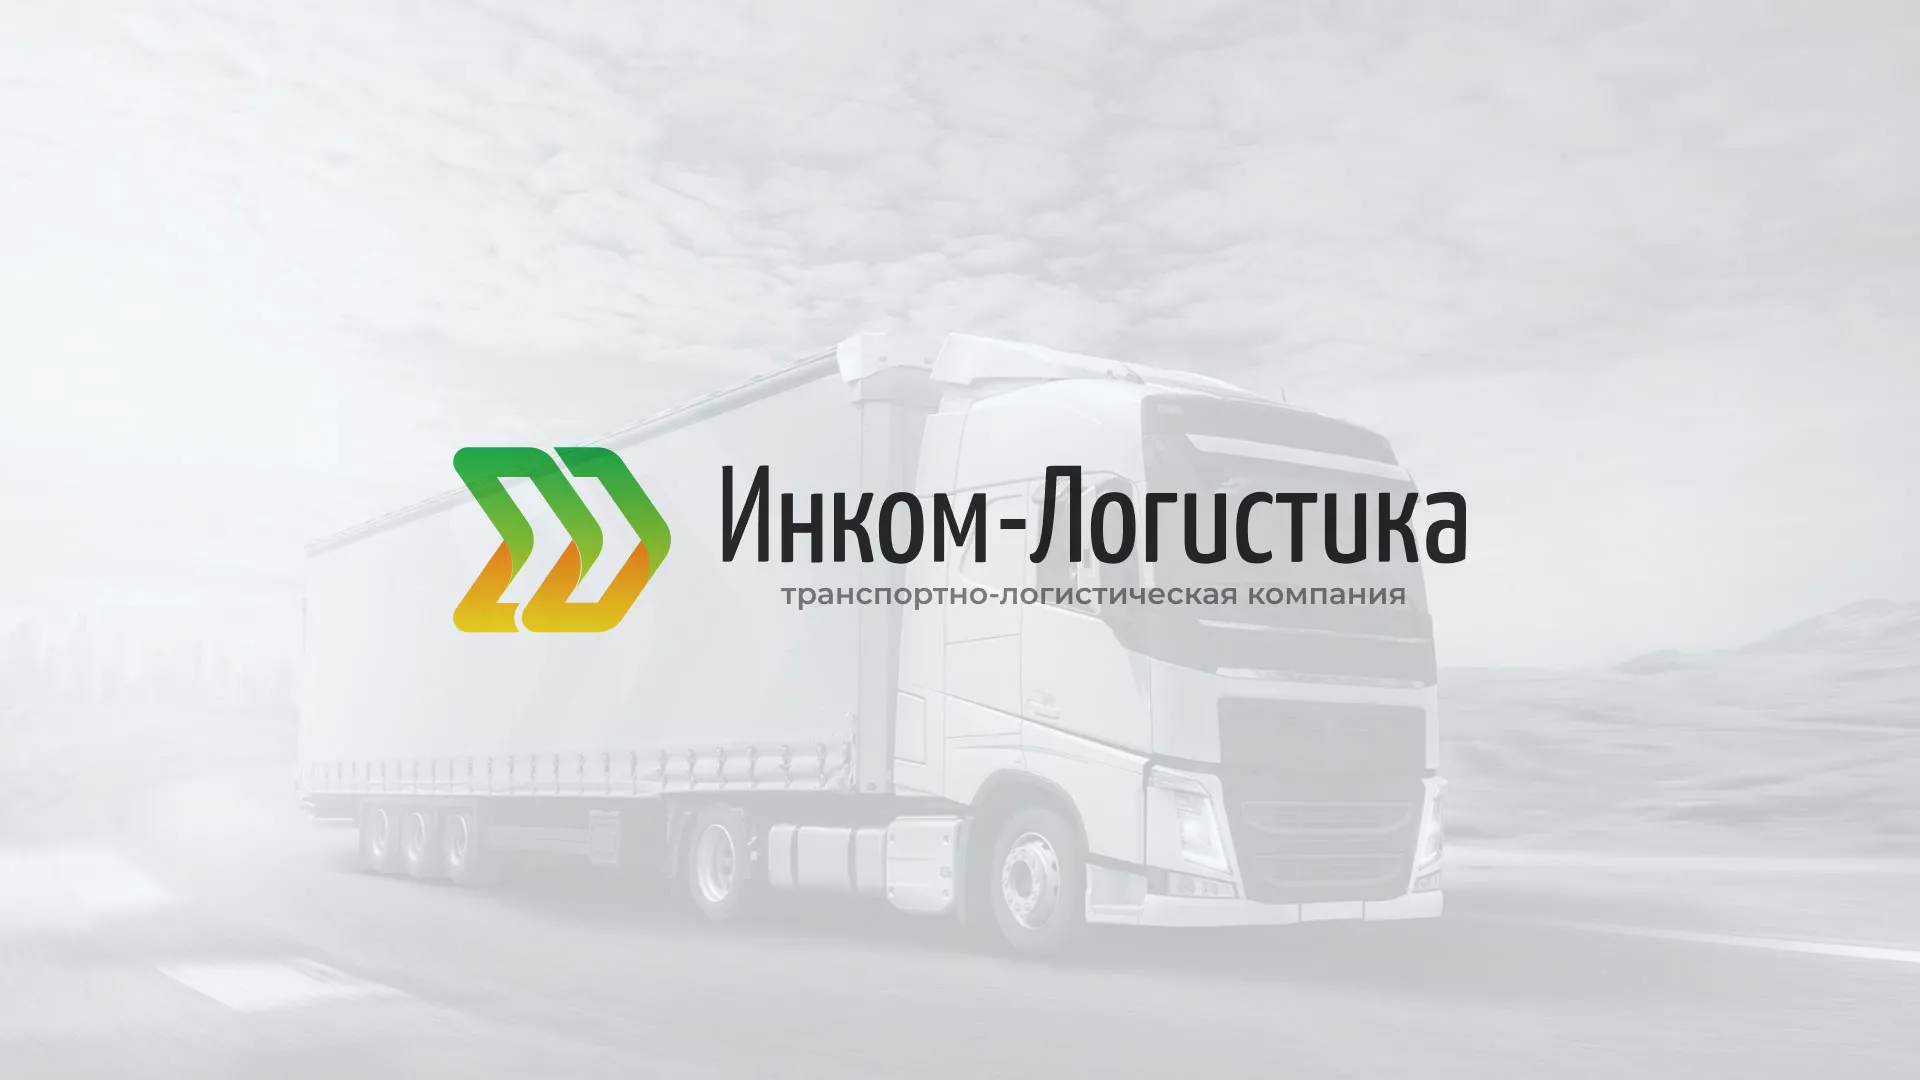 Разработка логотипа и сайта компании «Инком-Логистика» в Благовещенске